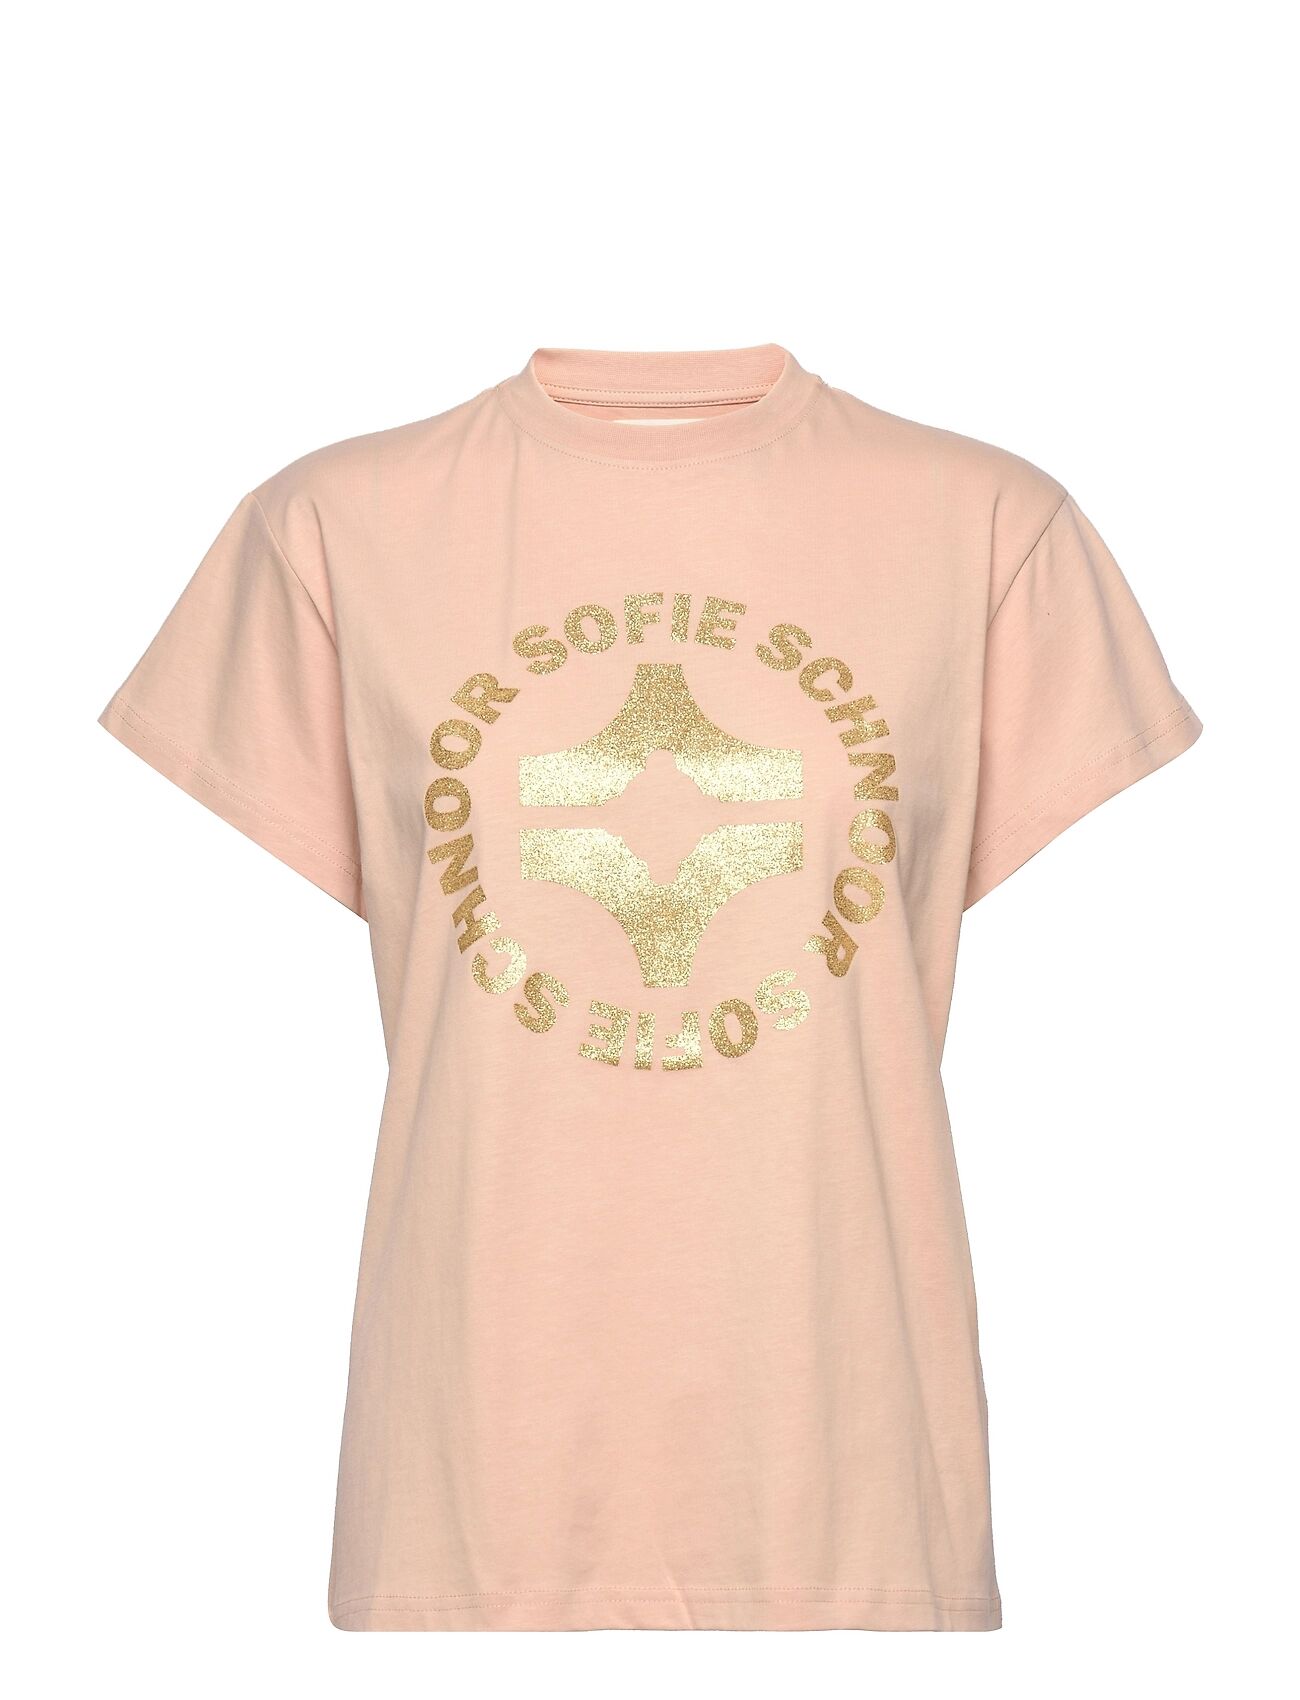 Sofie Schnoor T-Shirt T-shirts & Tops Short-sleeved Rosa Sofie Schnoor